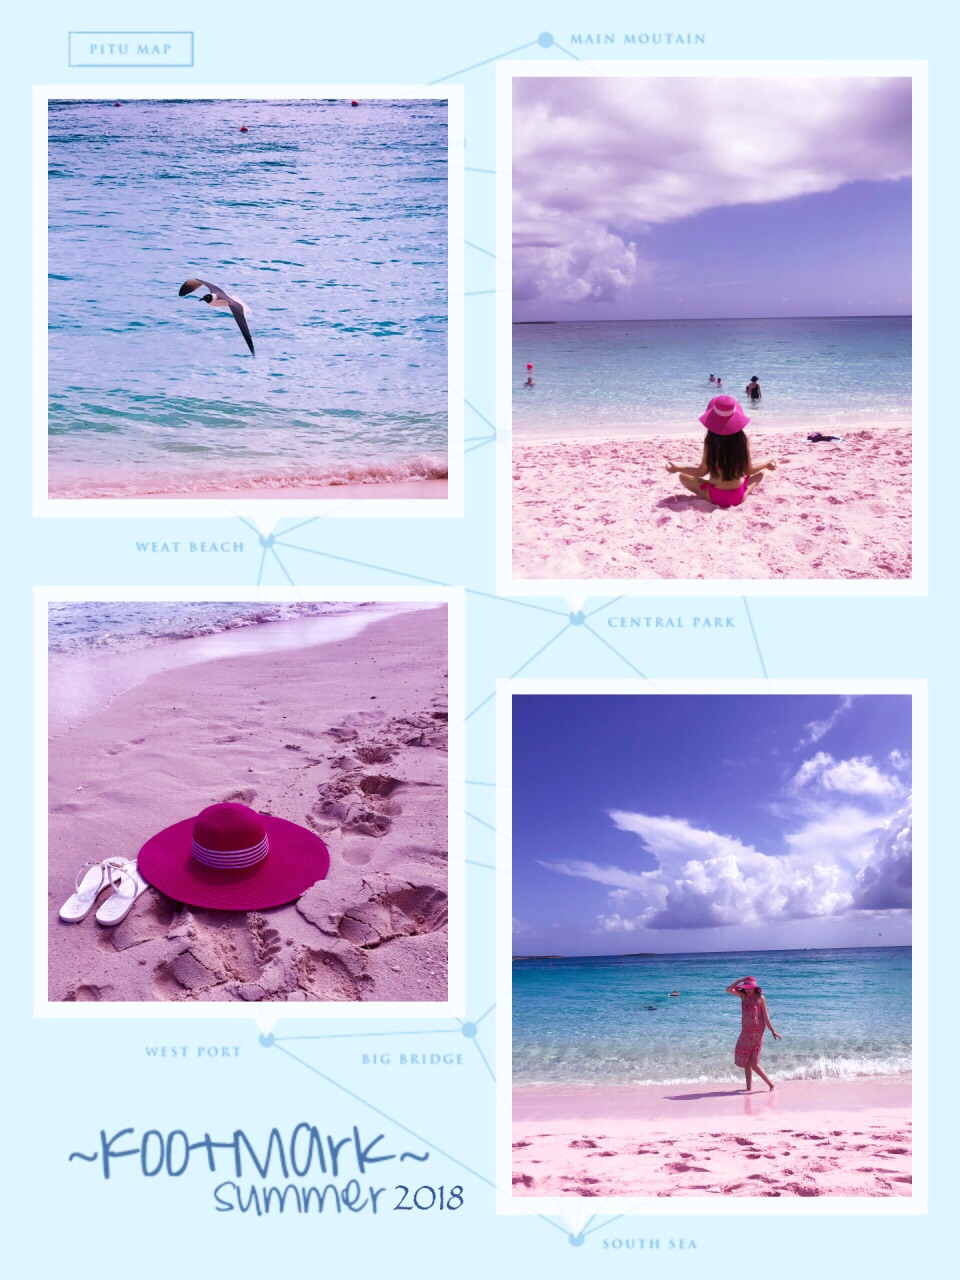 #激情一夏#水菱环球之旅の哈勃岛粉红沙滩